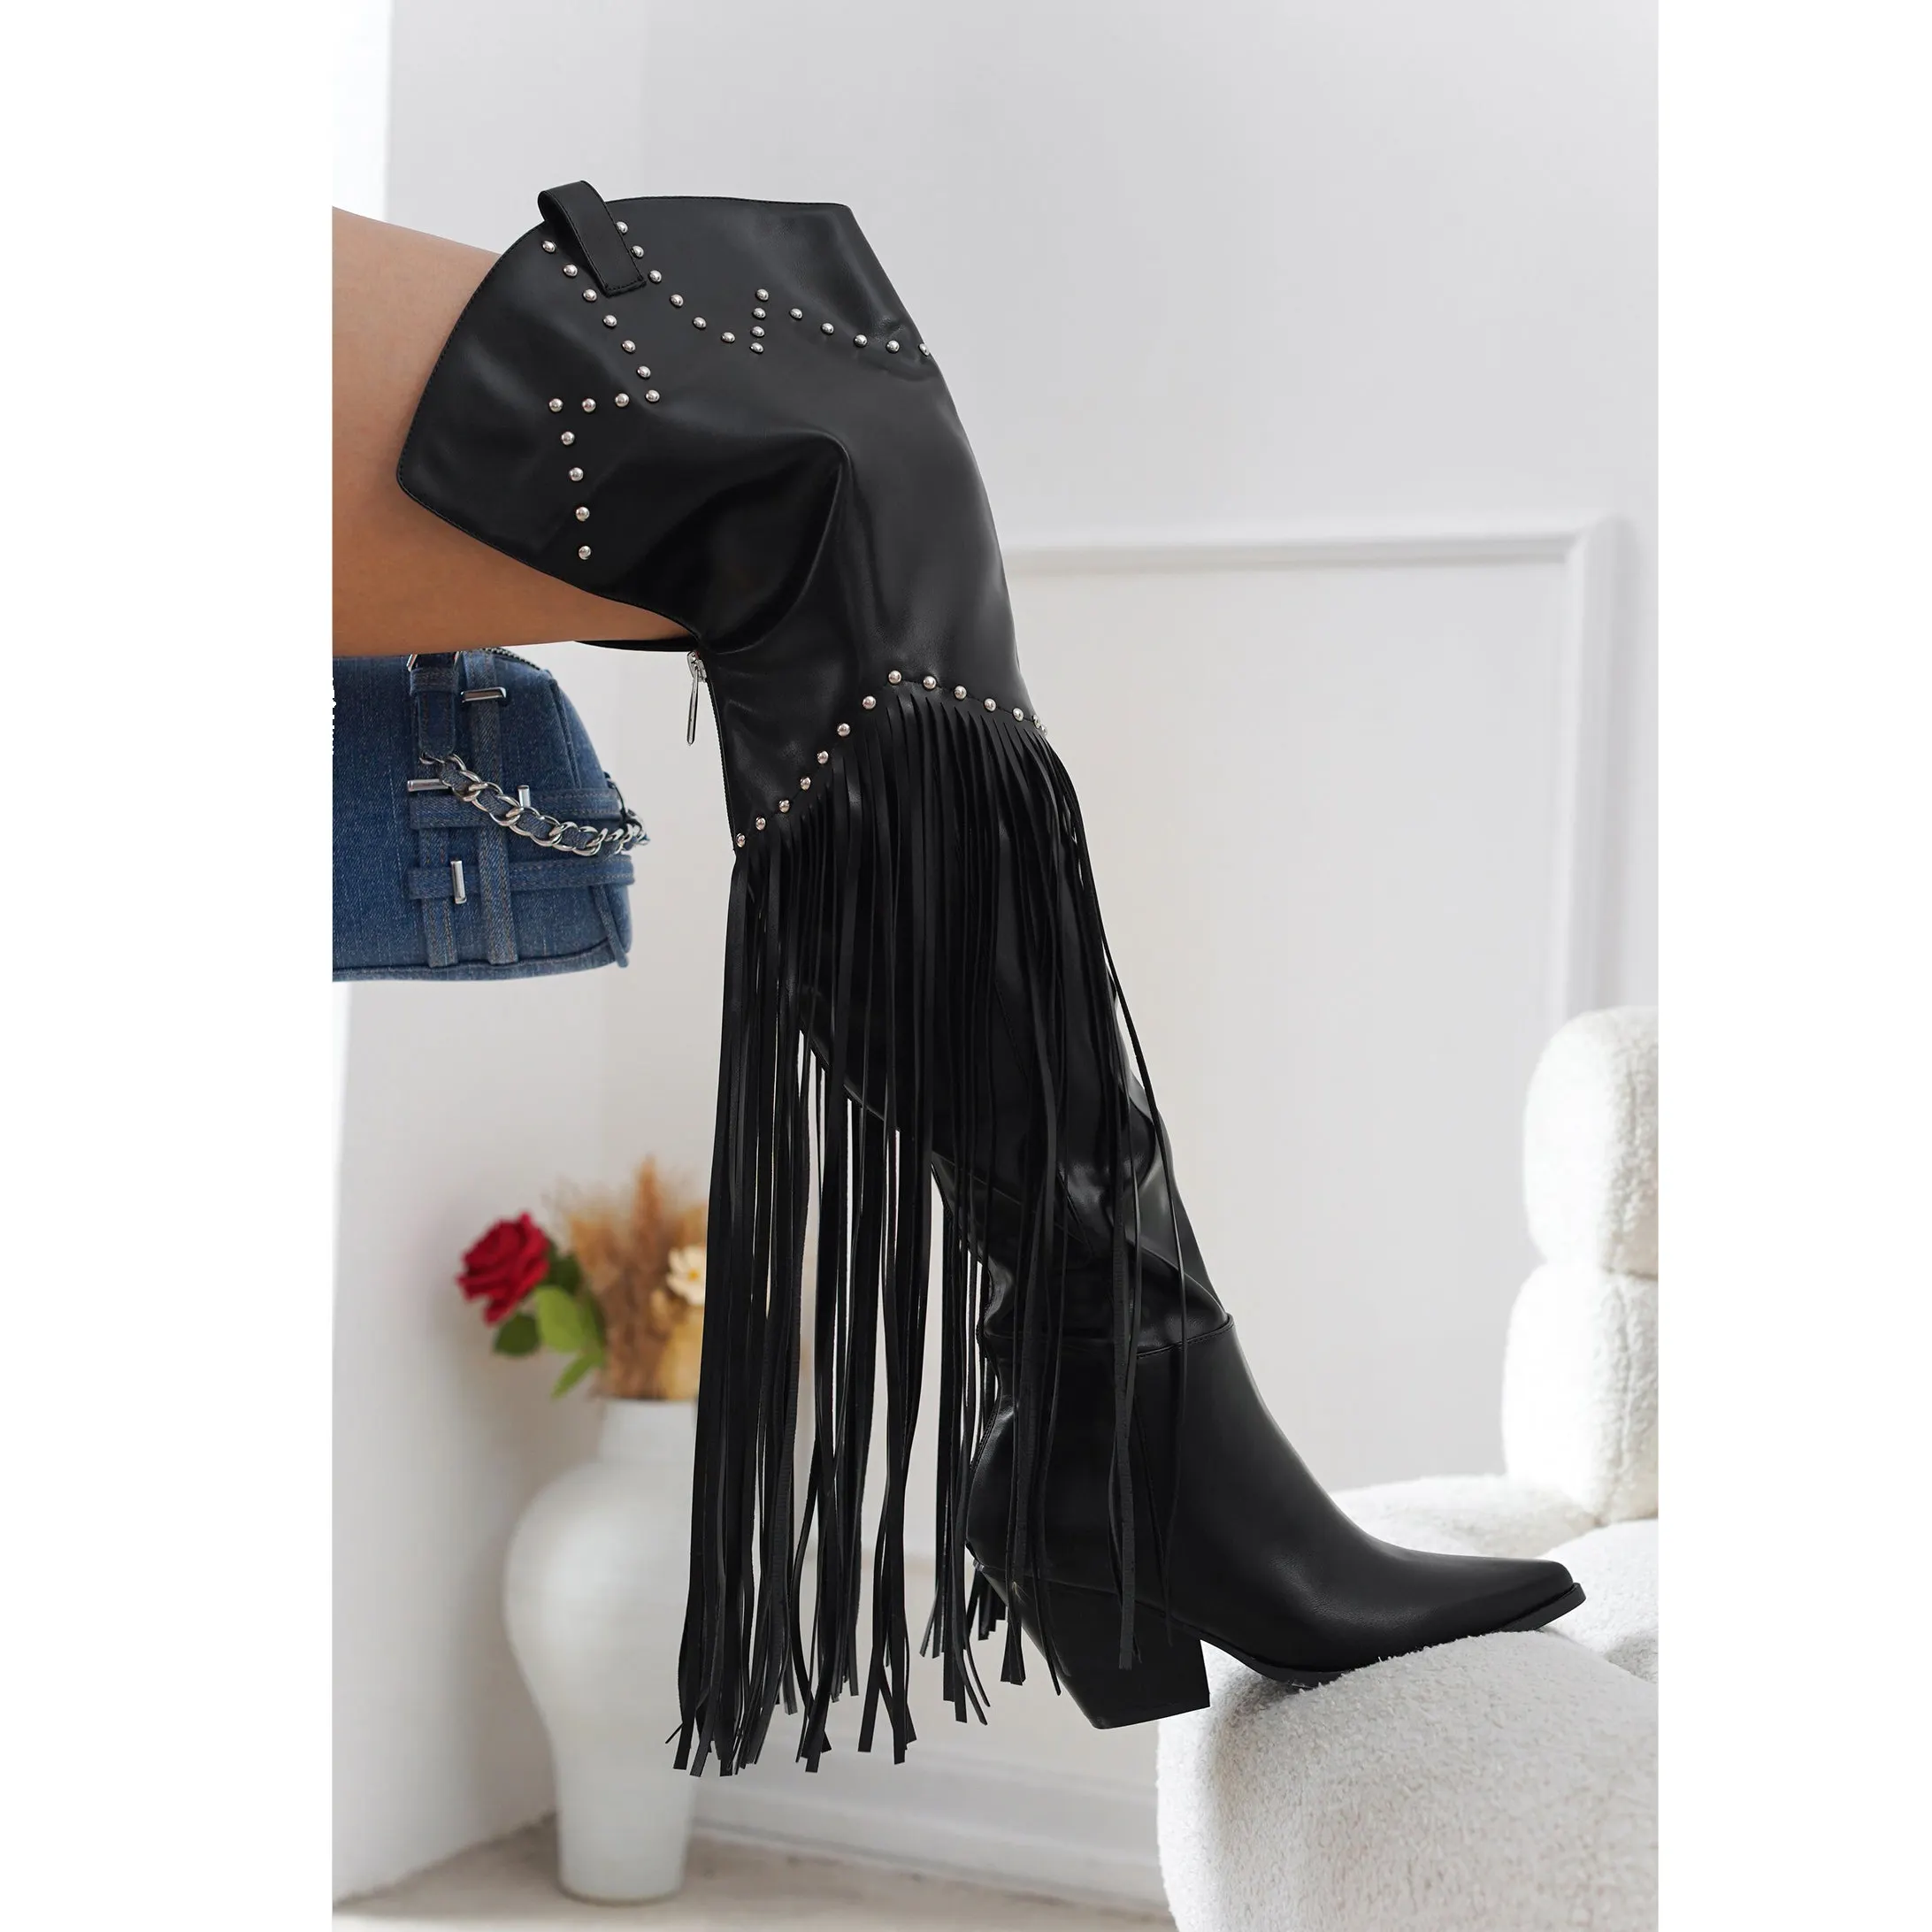 SHIKOL noir marron ruban frange Western bottes femmes chaussures personnalisées en cuir talons épais dames Rivet cuisse haute Cowboy bottes